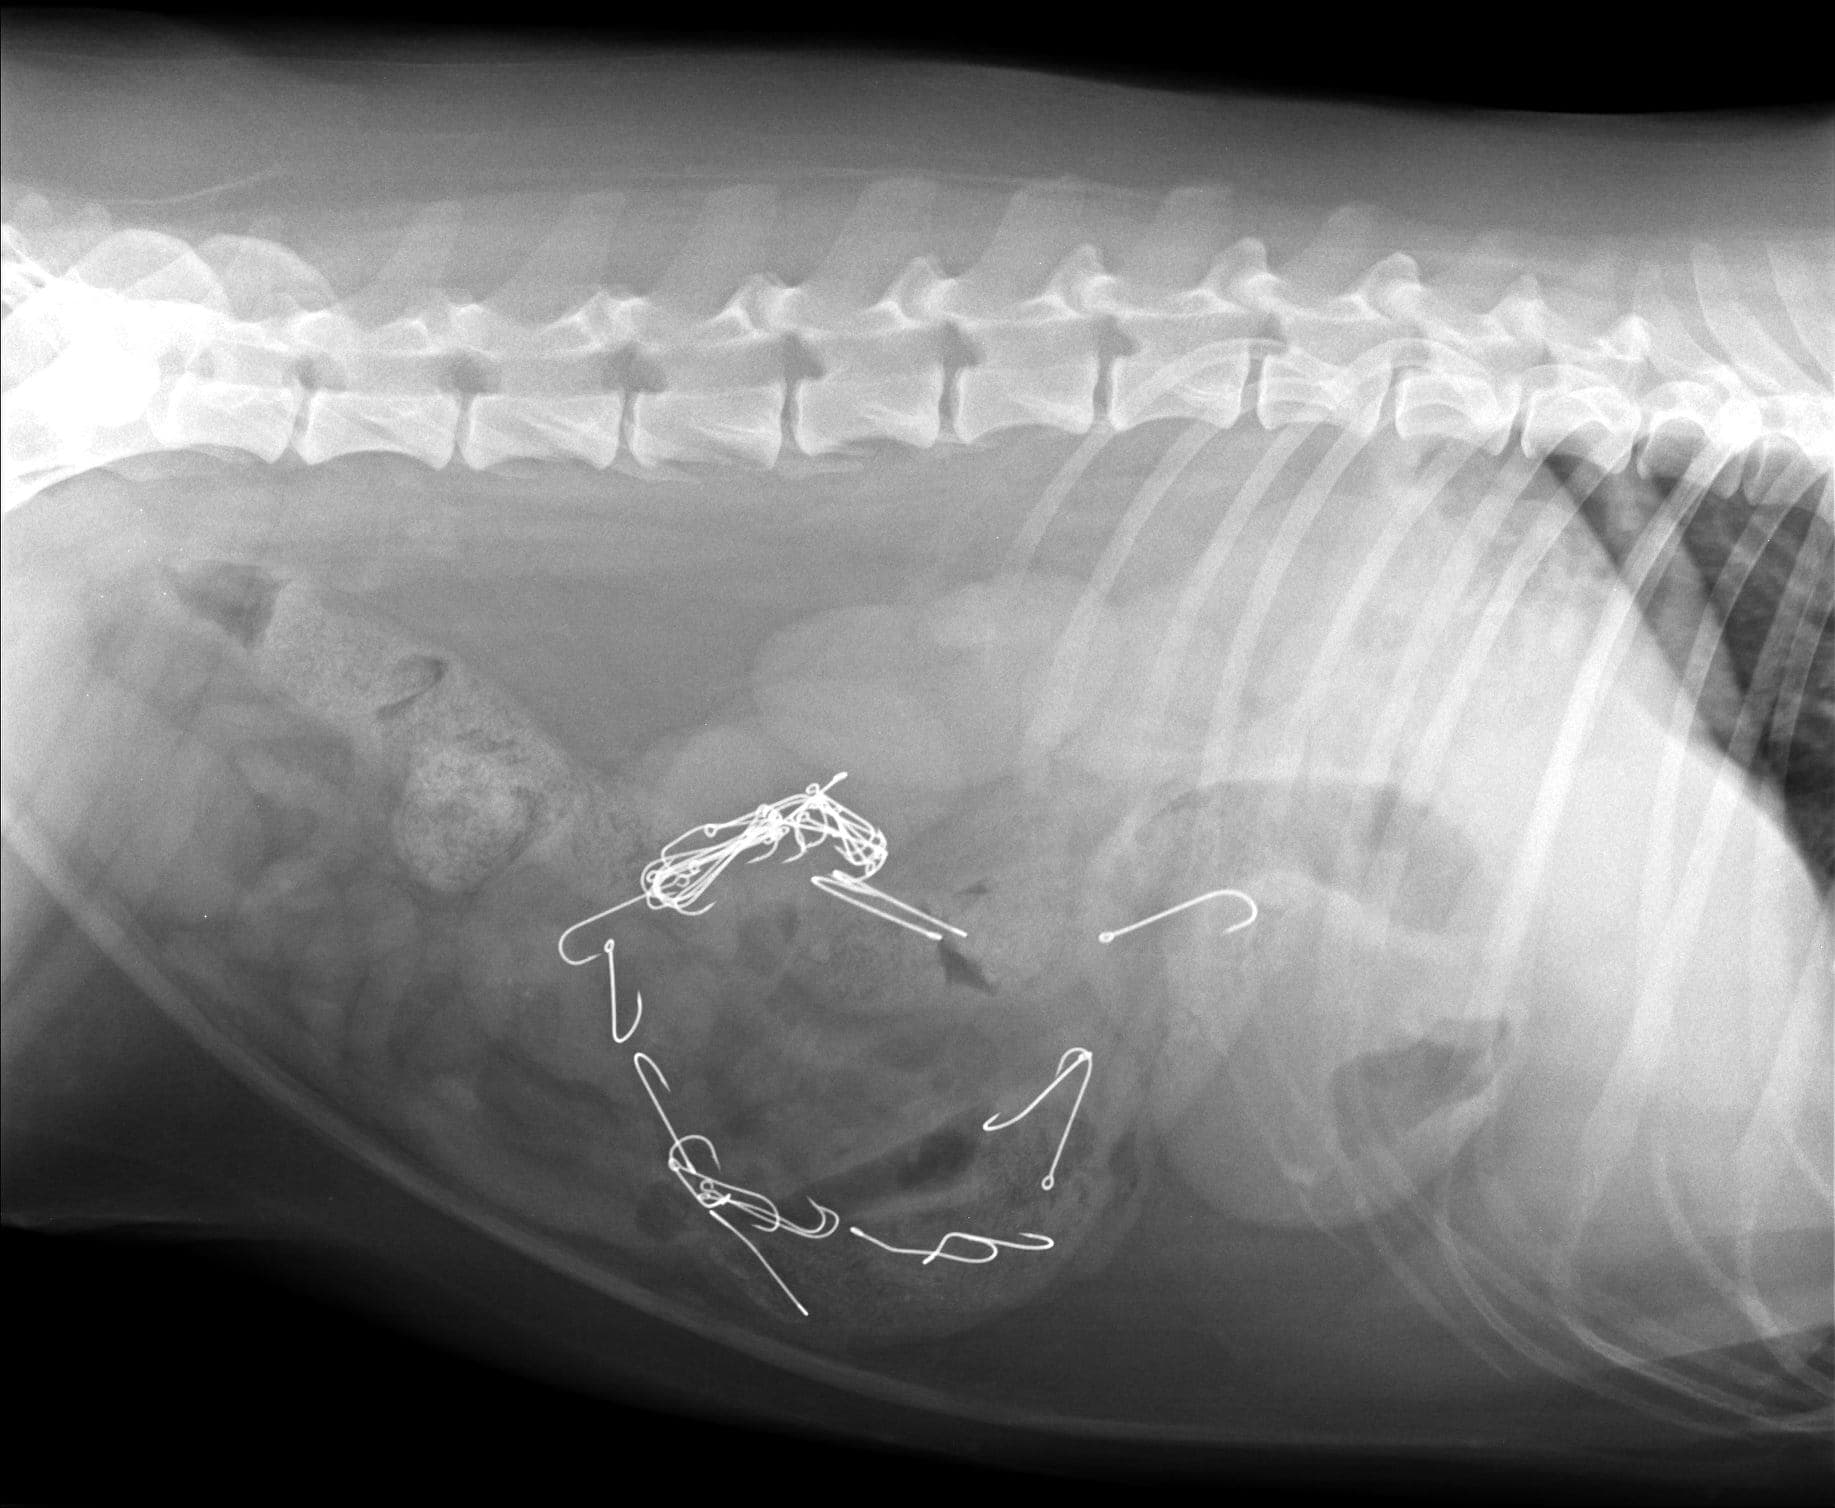 Hond overlijdt na eten vishaken, dierenkliniek waarschuwt: 'Ruim uw afval op'